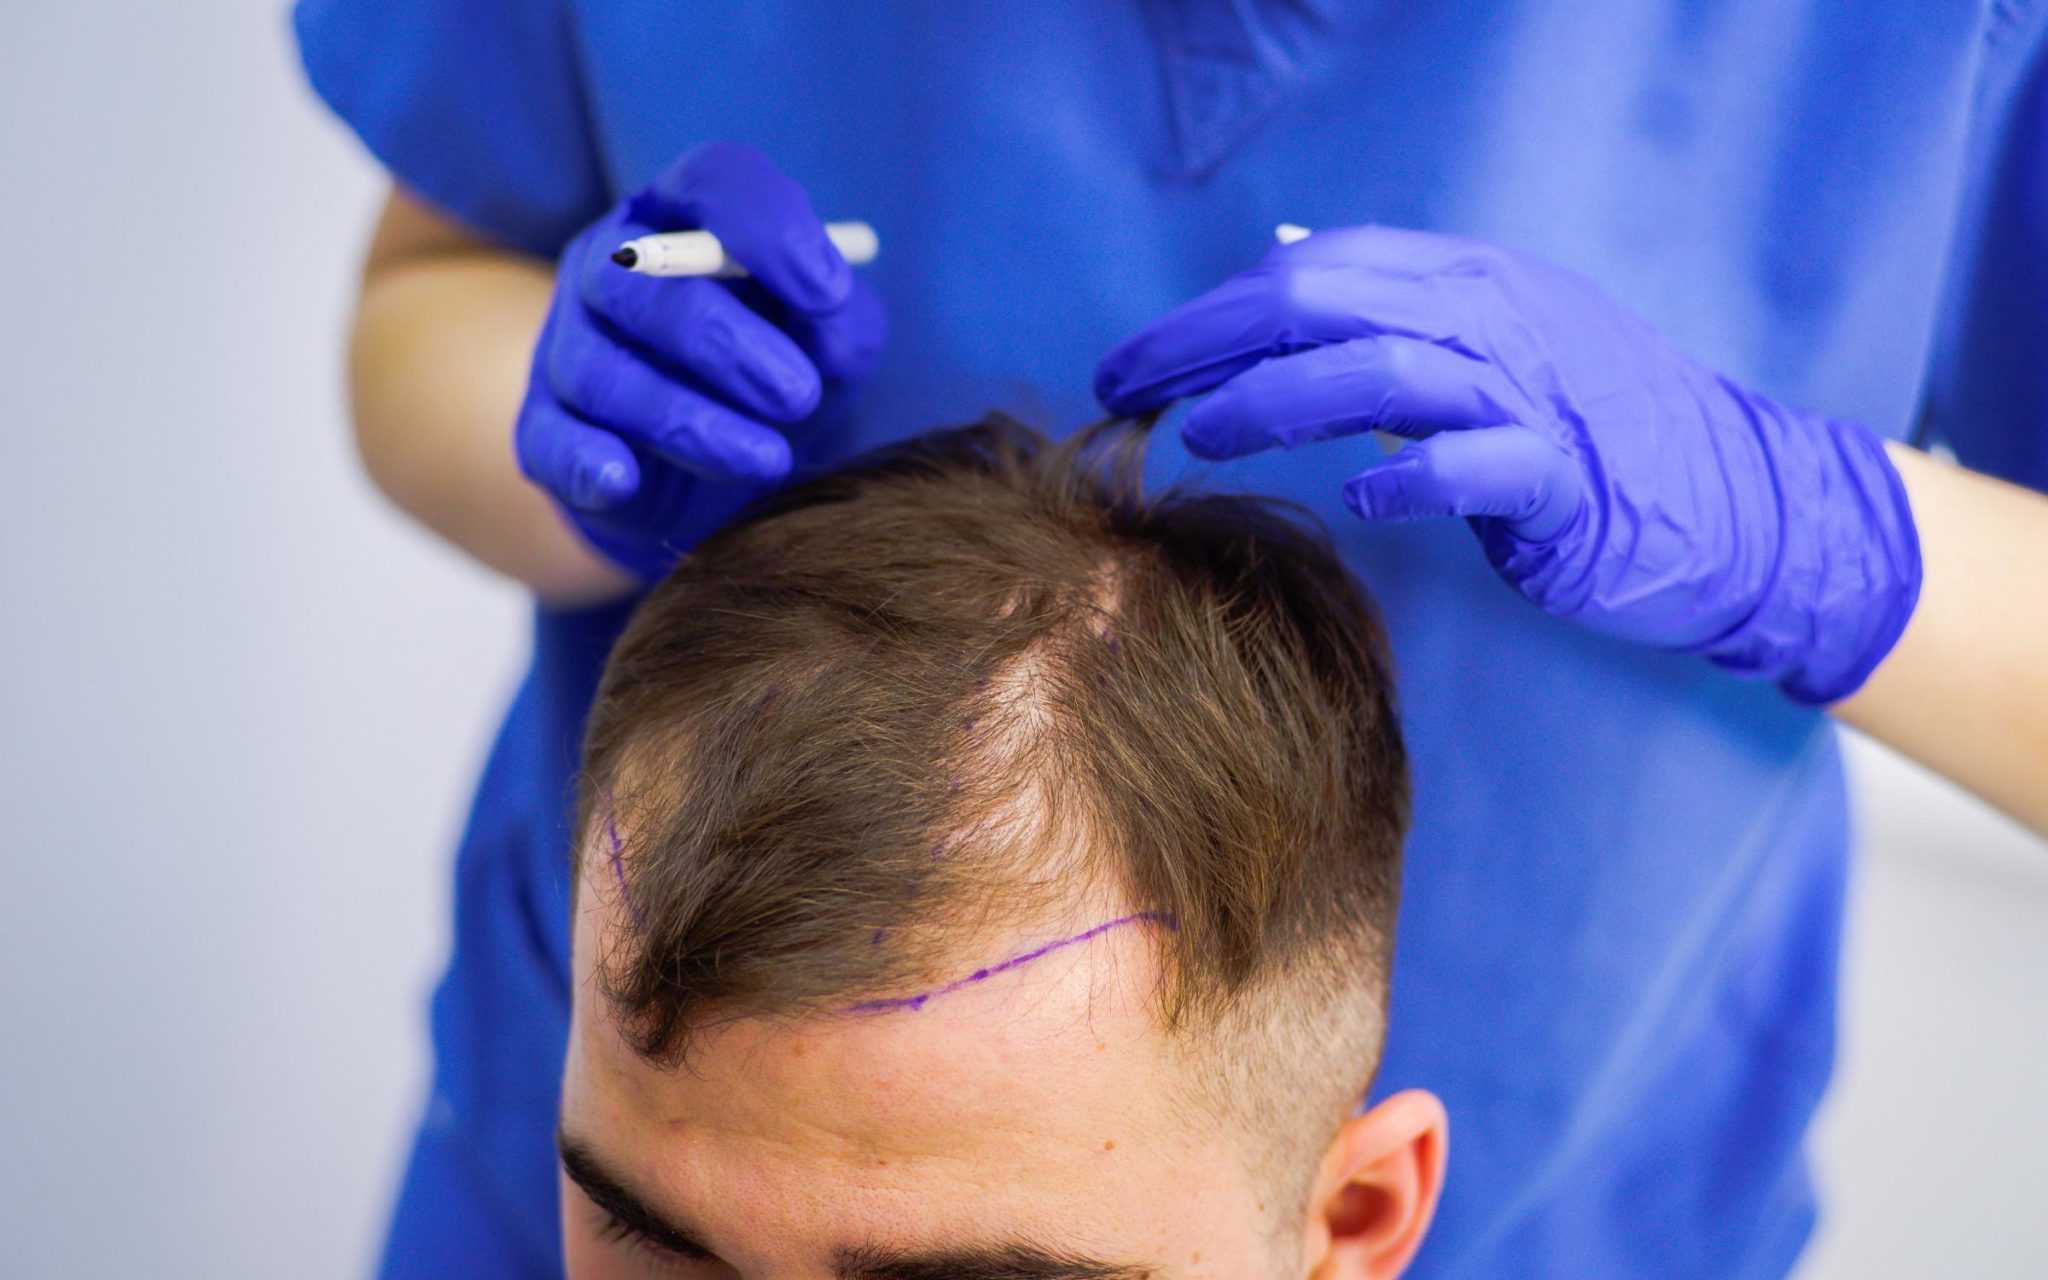 Что такое операция при выпадении волос